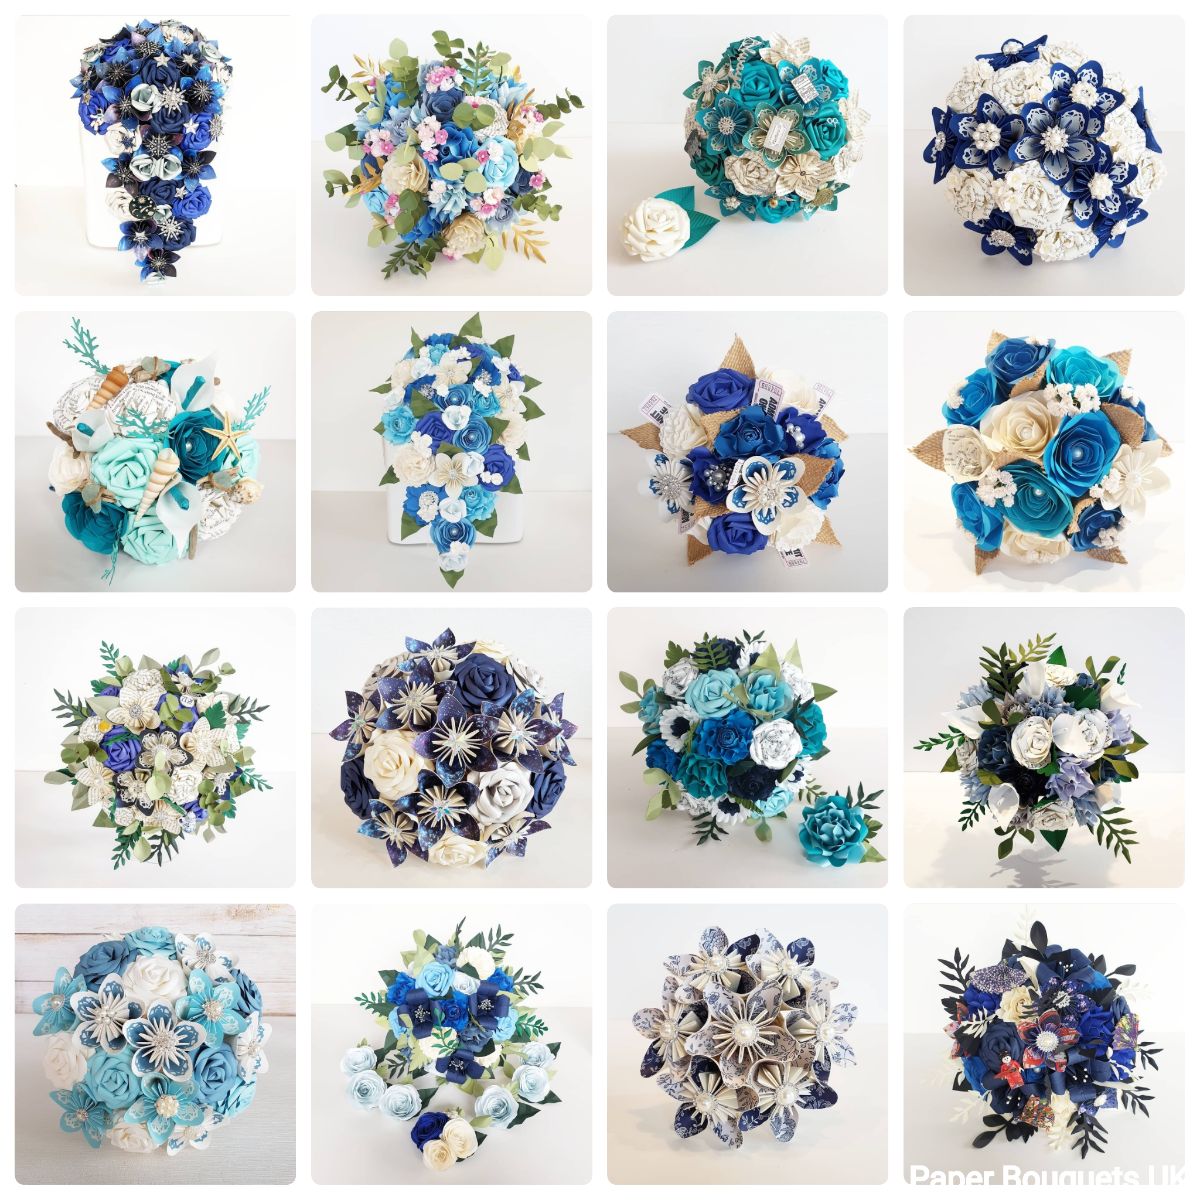 Paper Bouquets UK-Image-106